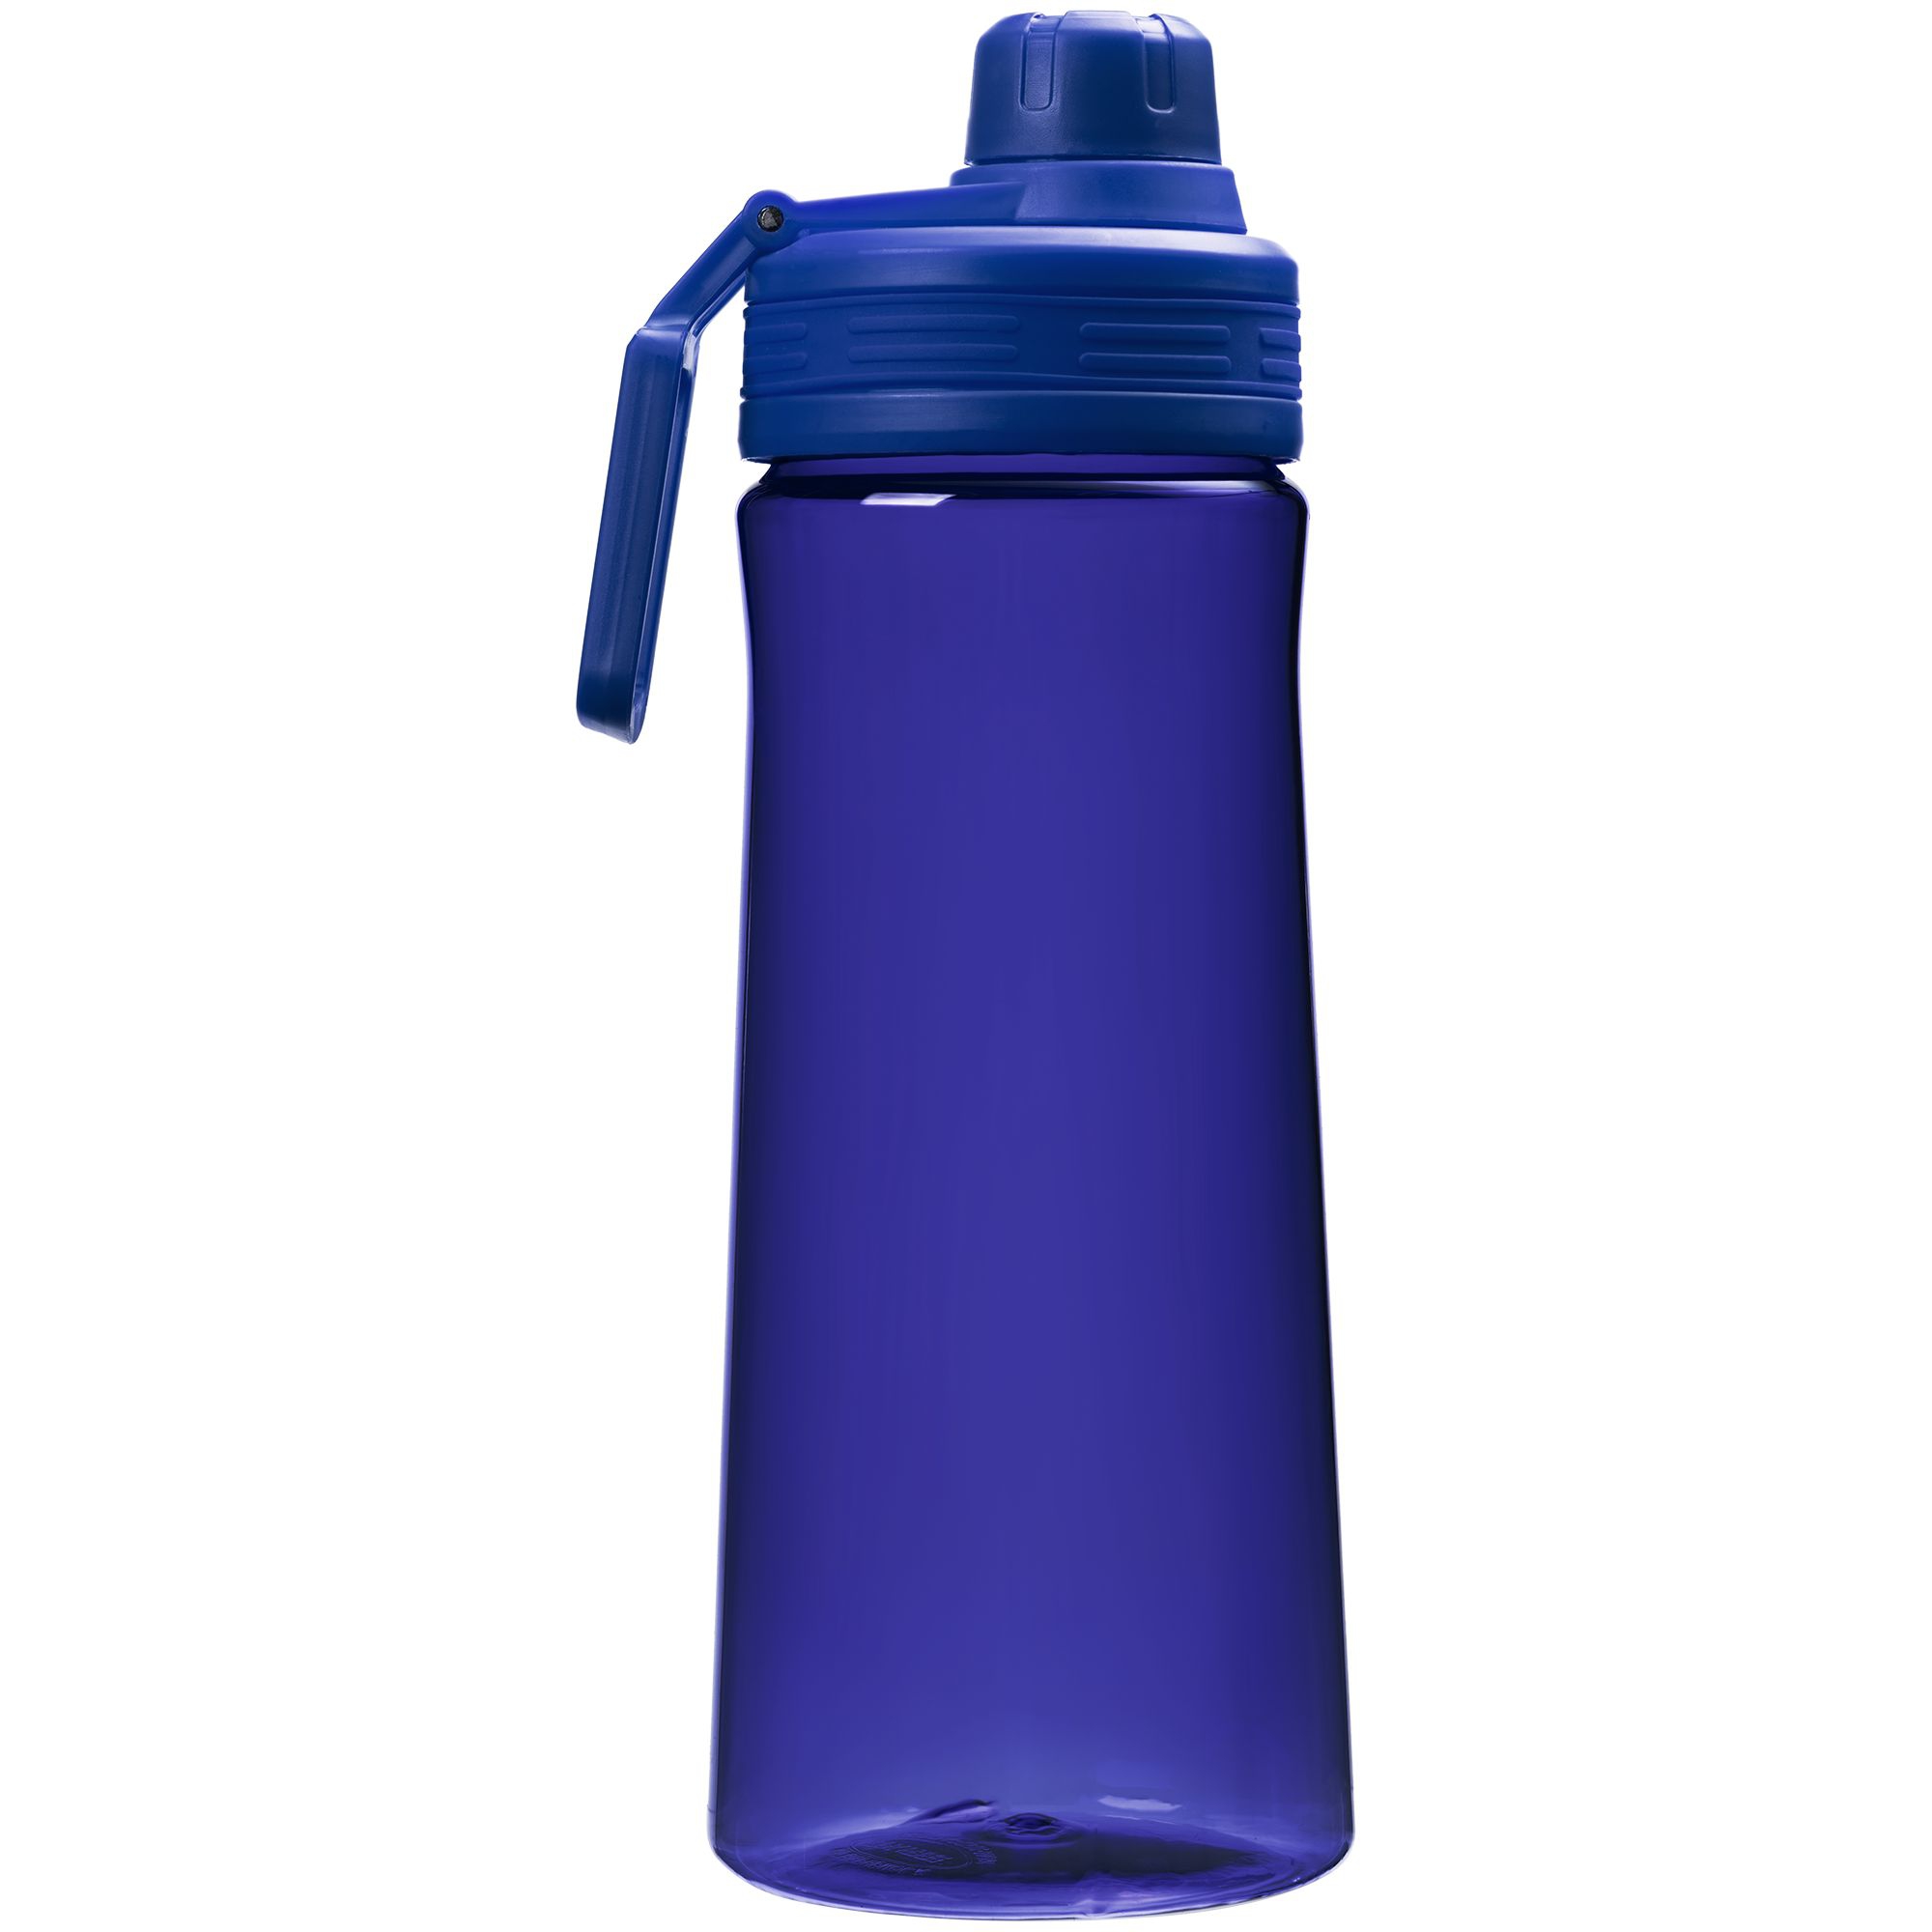 Аквафор бутылка для воды. Бутылка для воды. Спортивная бутылка. Спортивная бутылка для воды. Пластмассовая бутылка для воды.